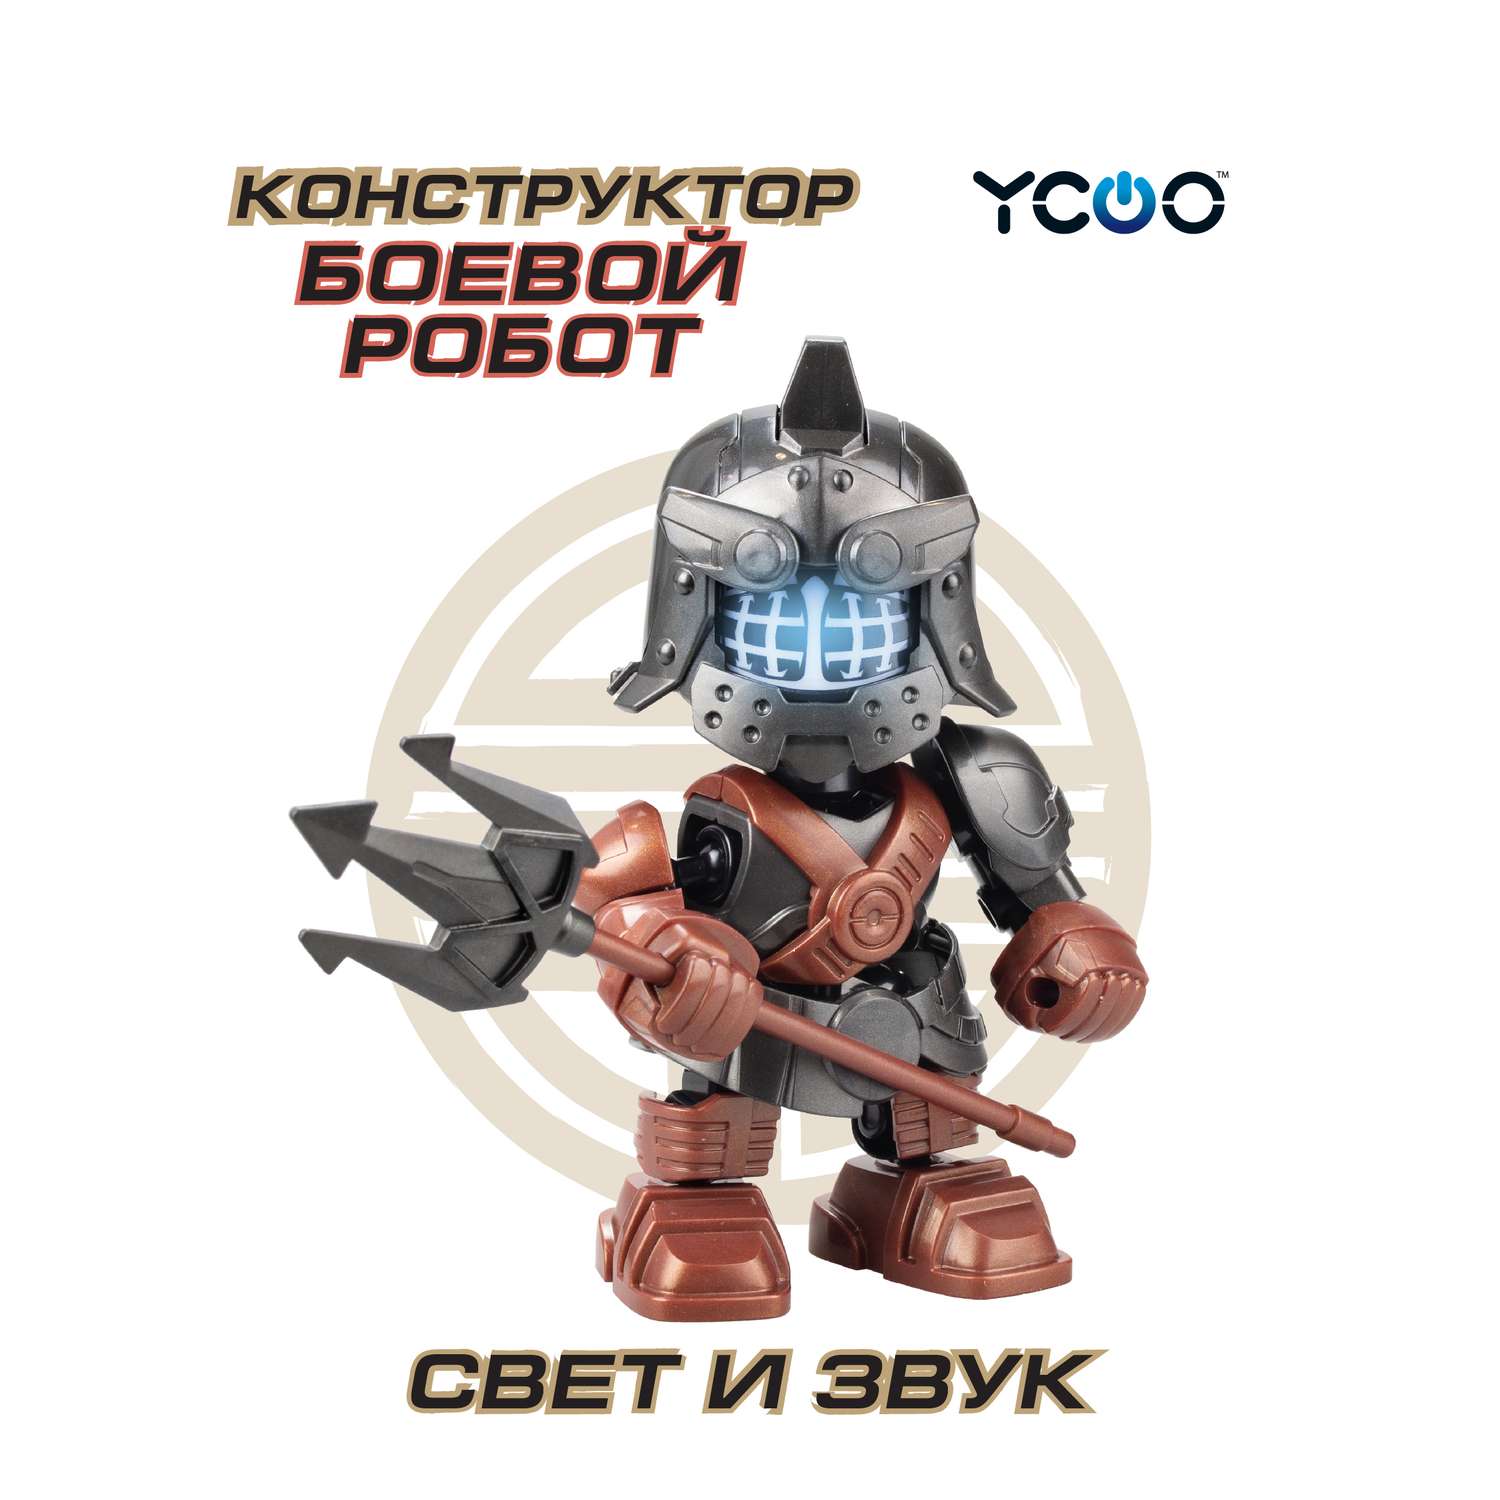 Робот YCOO Боевой одиночный - Гладиатор - фото 1